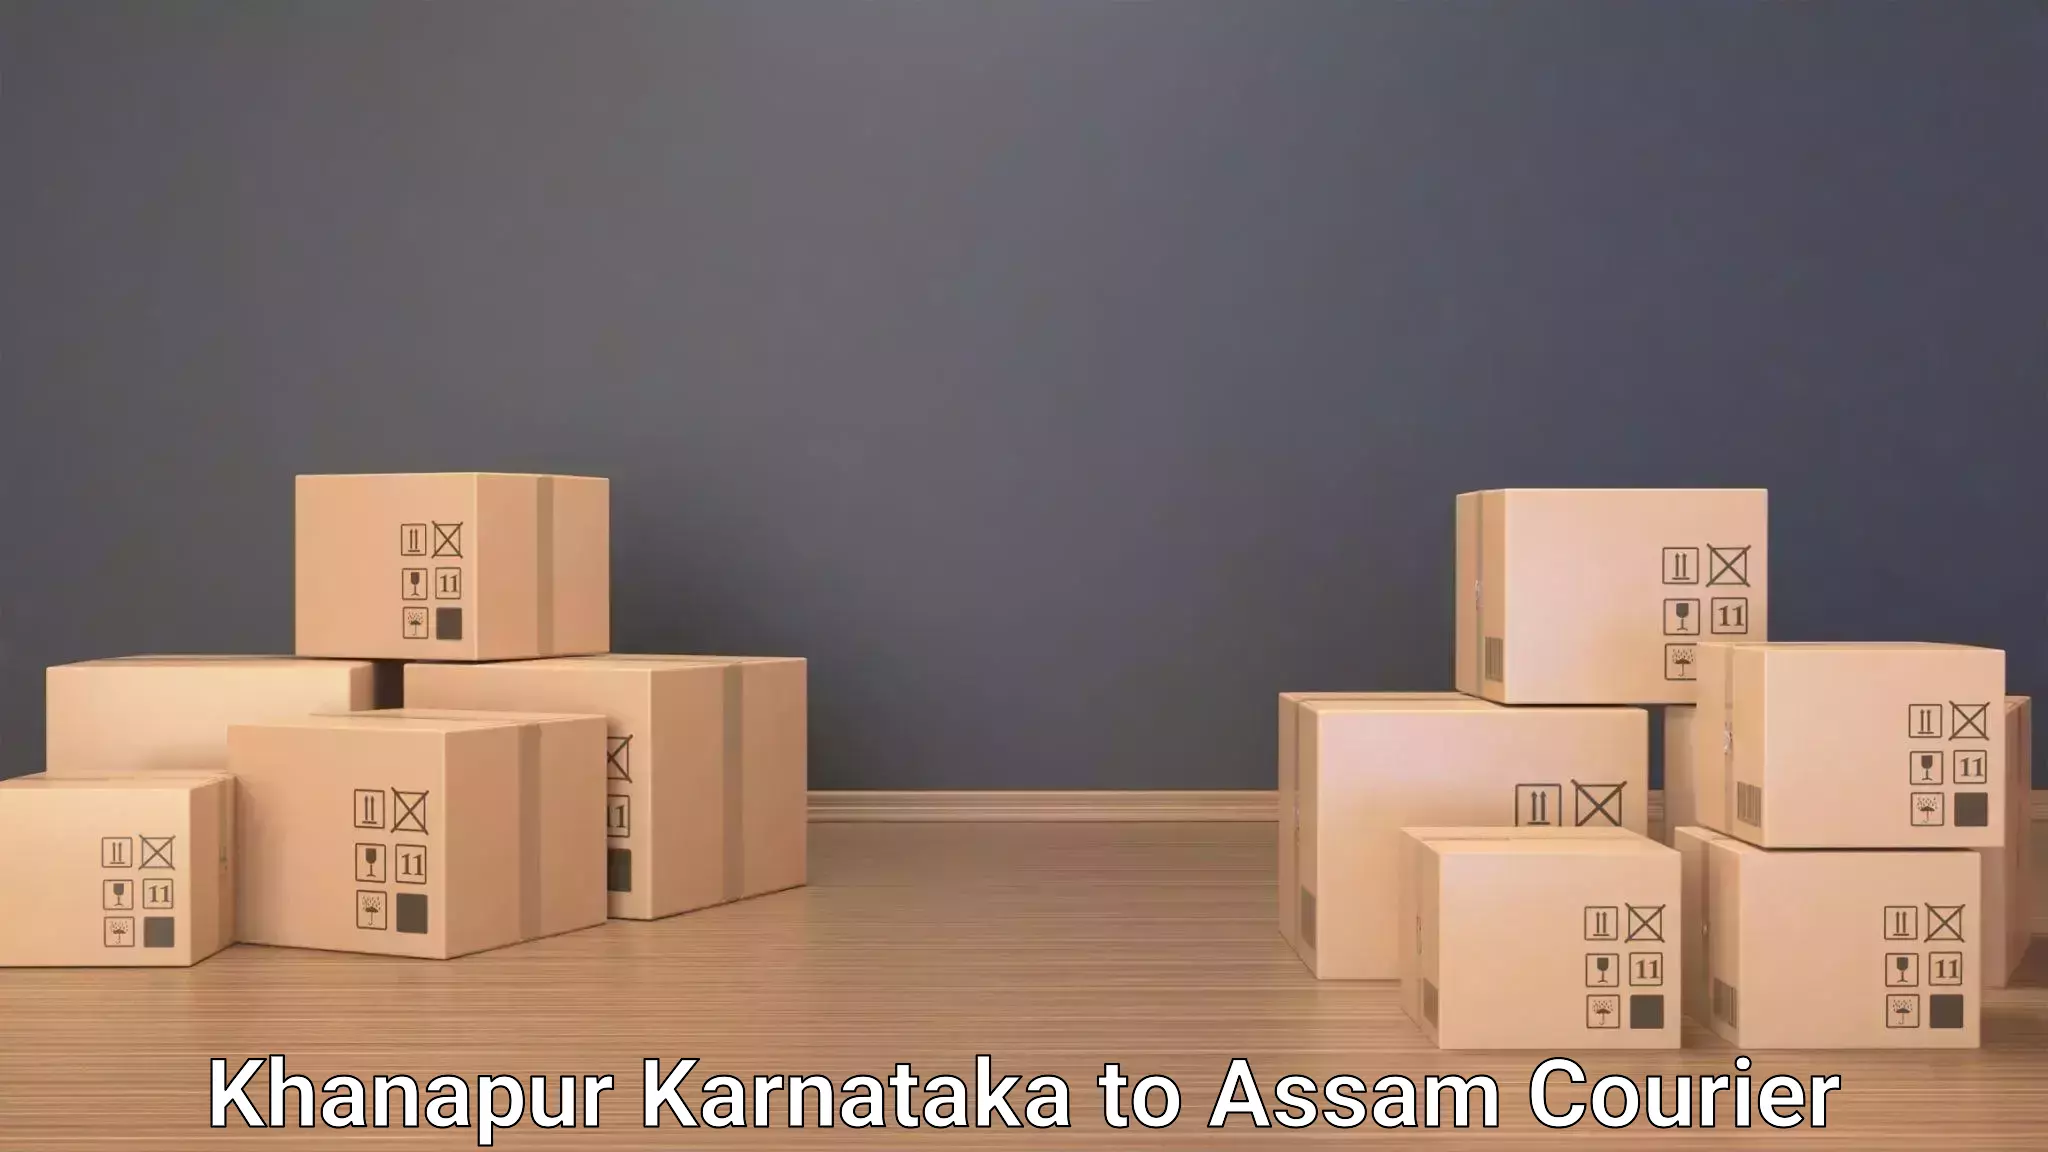 High-quality baggage shipment Khanapur Karnataka to Hailakandi